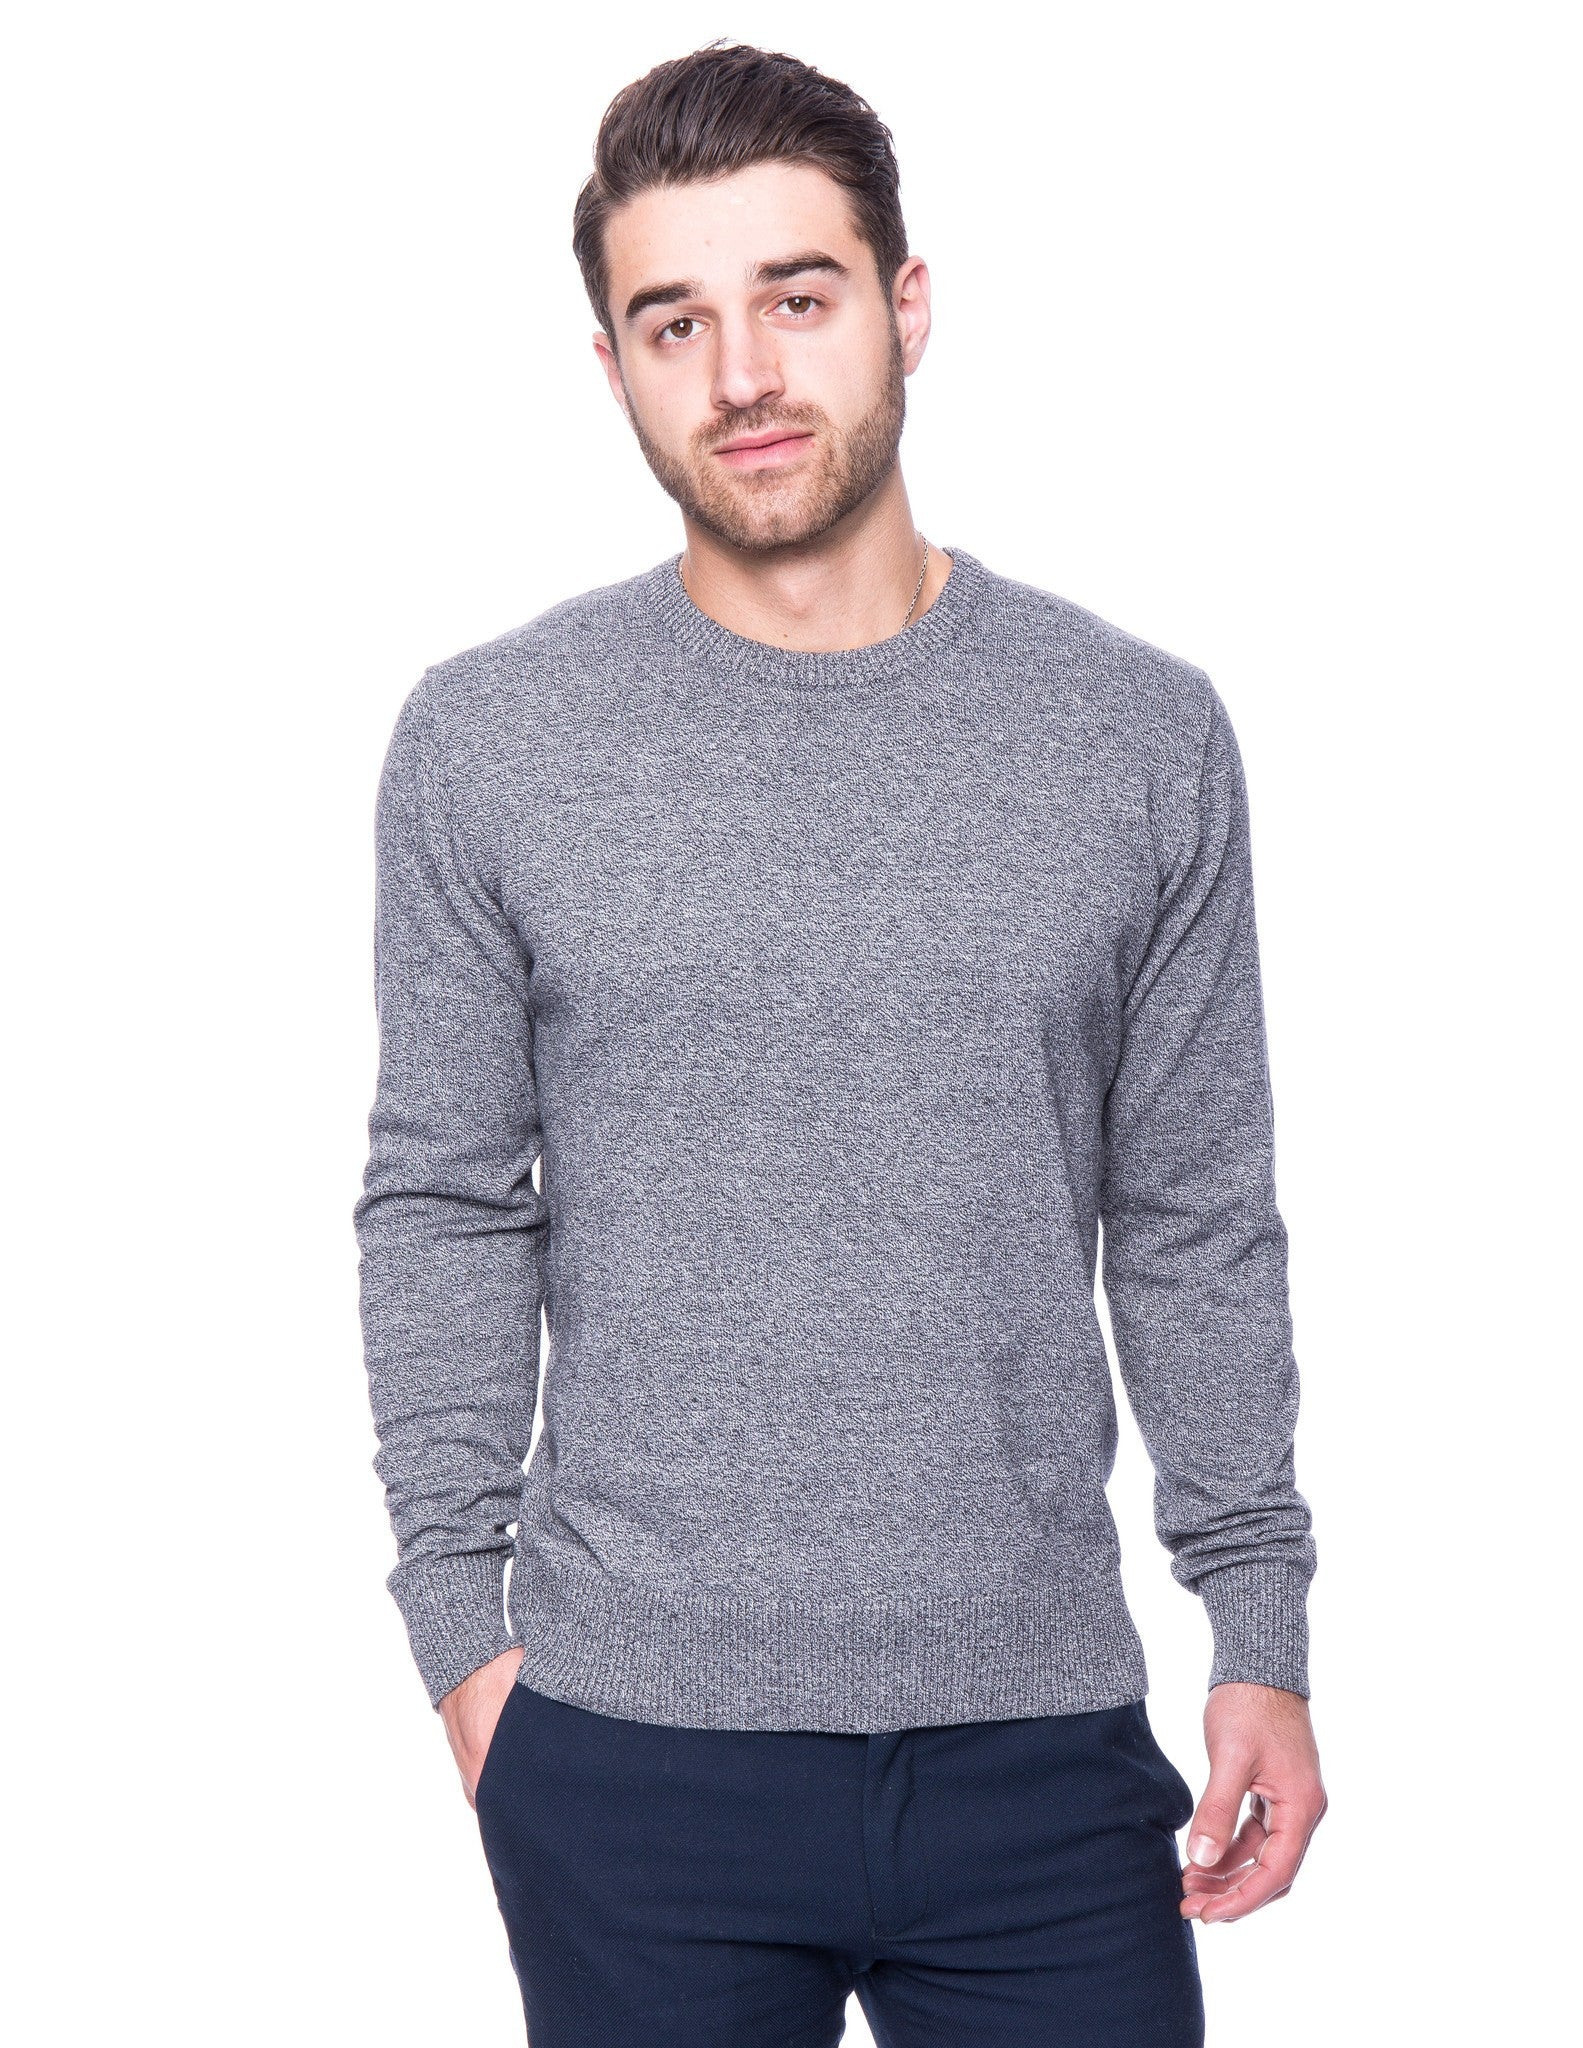 Men's Premium 100% Cotton Crew Neck Sweater